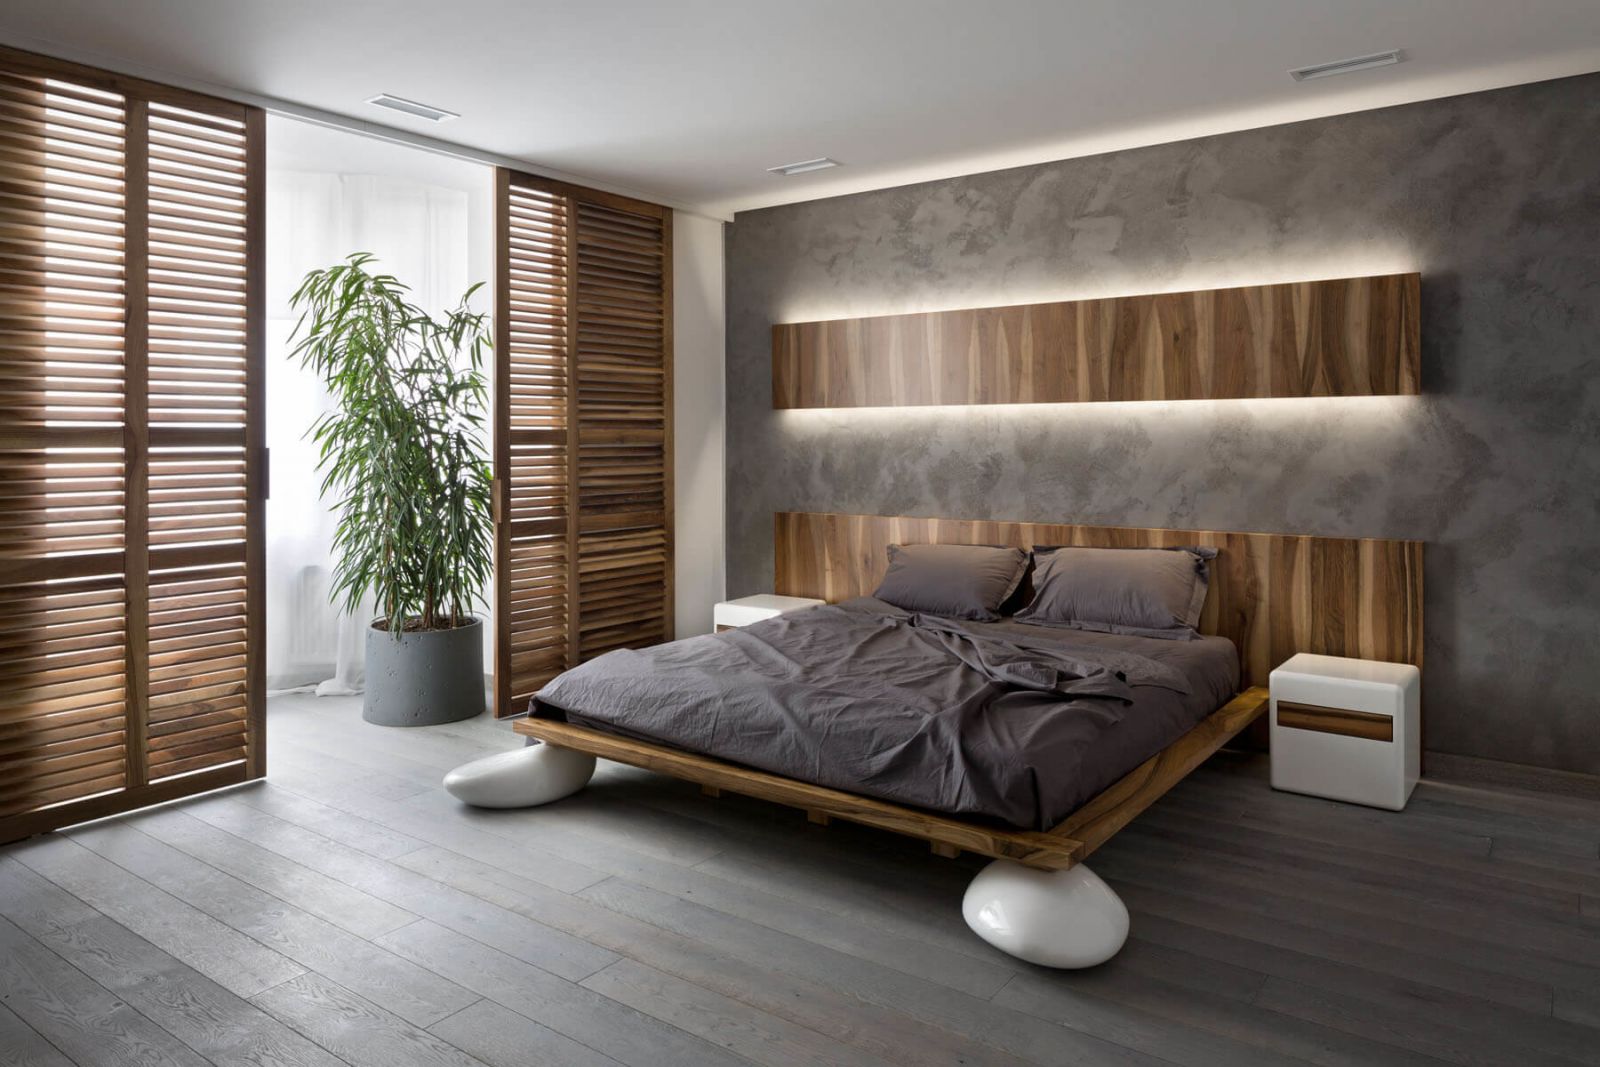 Интерьер главной спальни продолжает общую стилистику в которой выдержаны все помещения квартиры